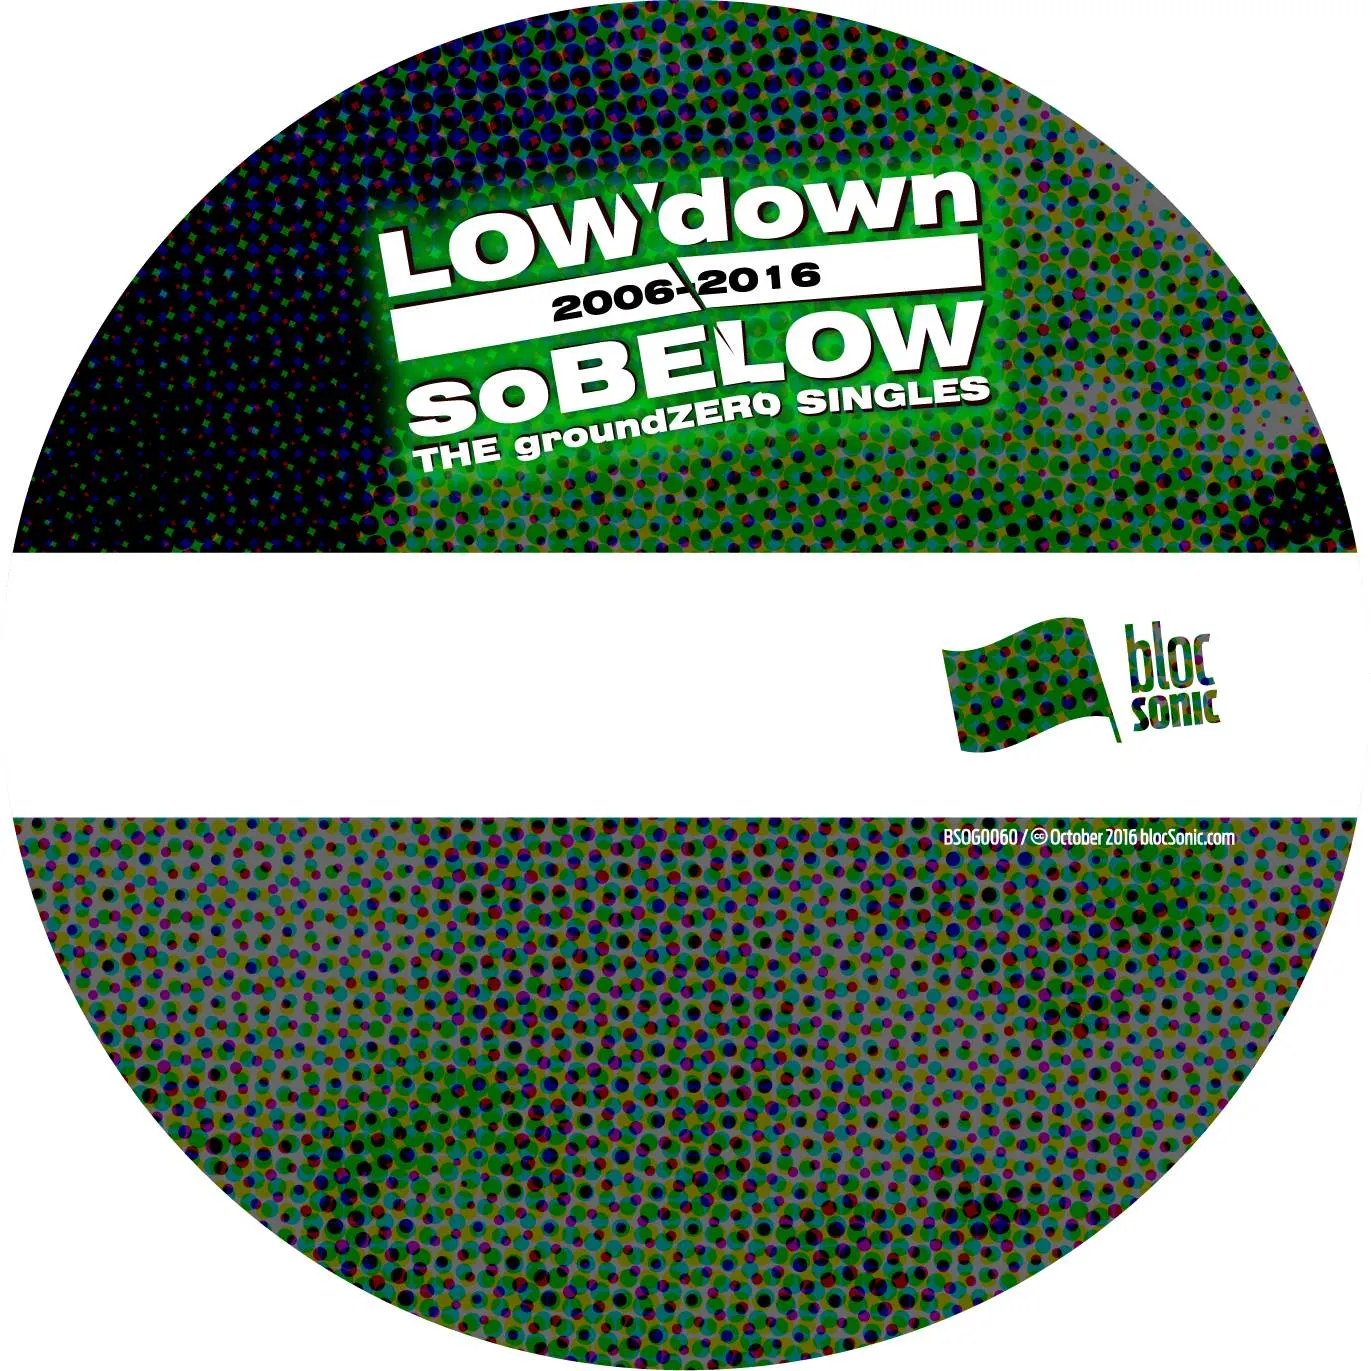 Album disc for “soBELOW (THE groundZERO SINGLES 2006-2016)” by LOWdown